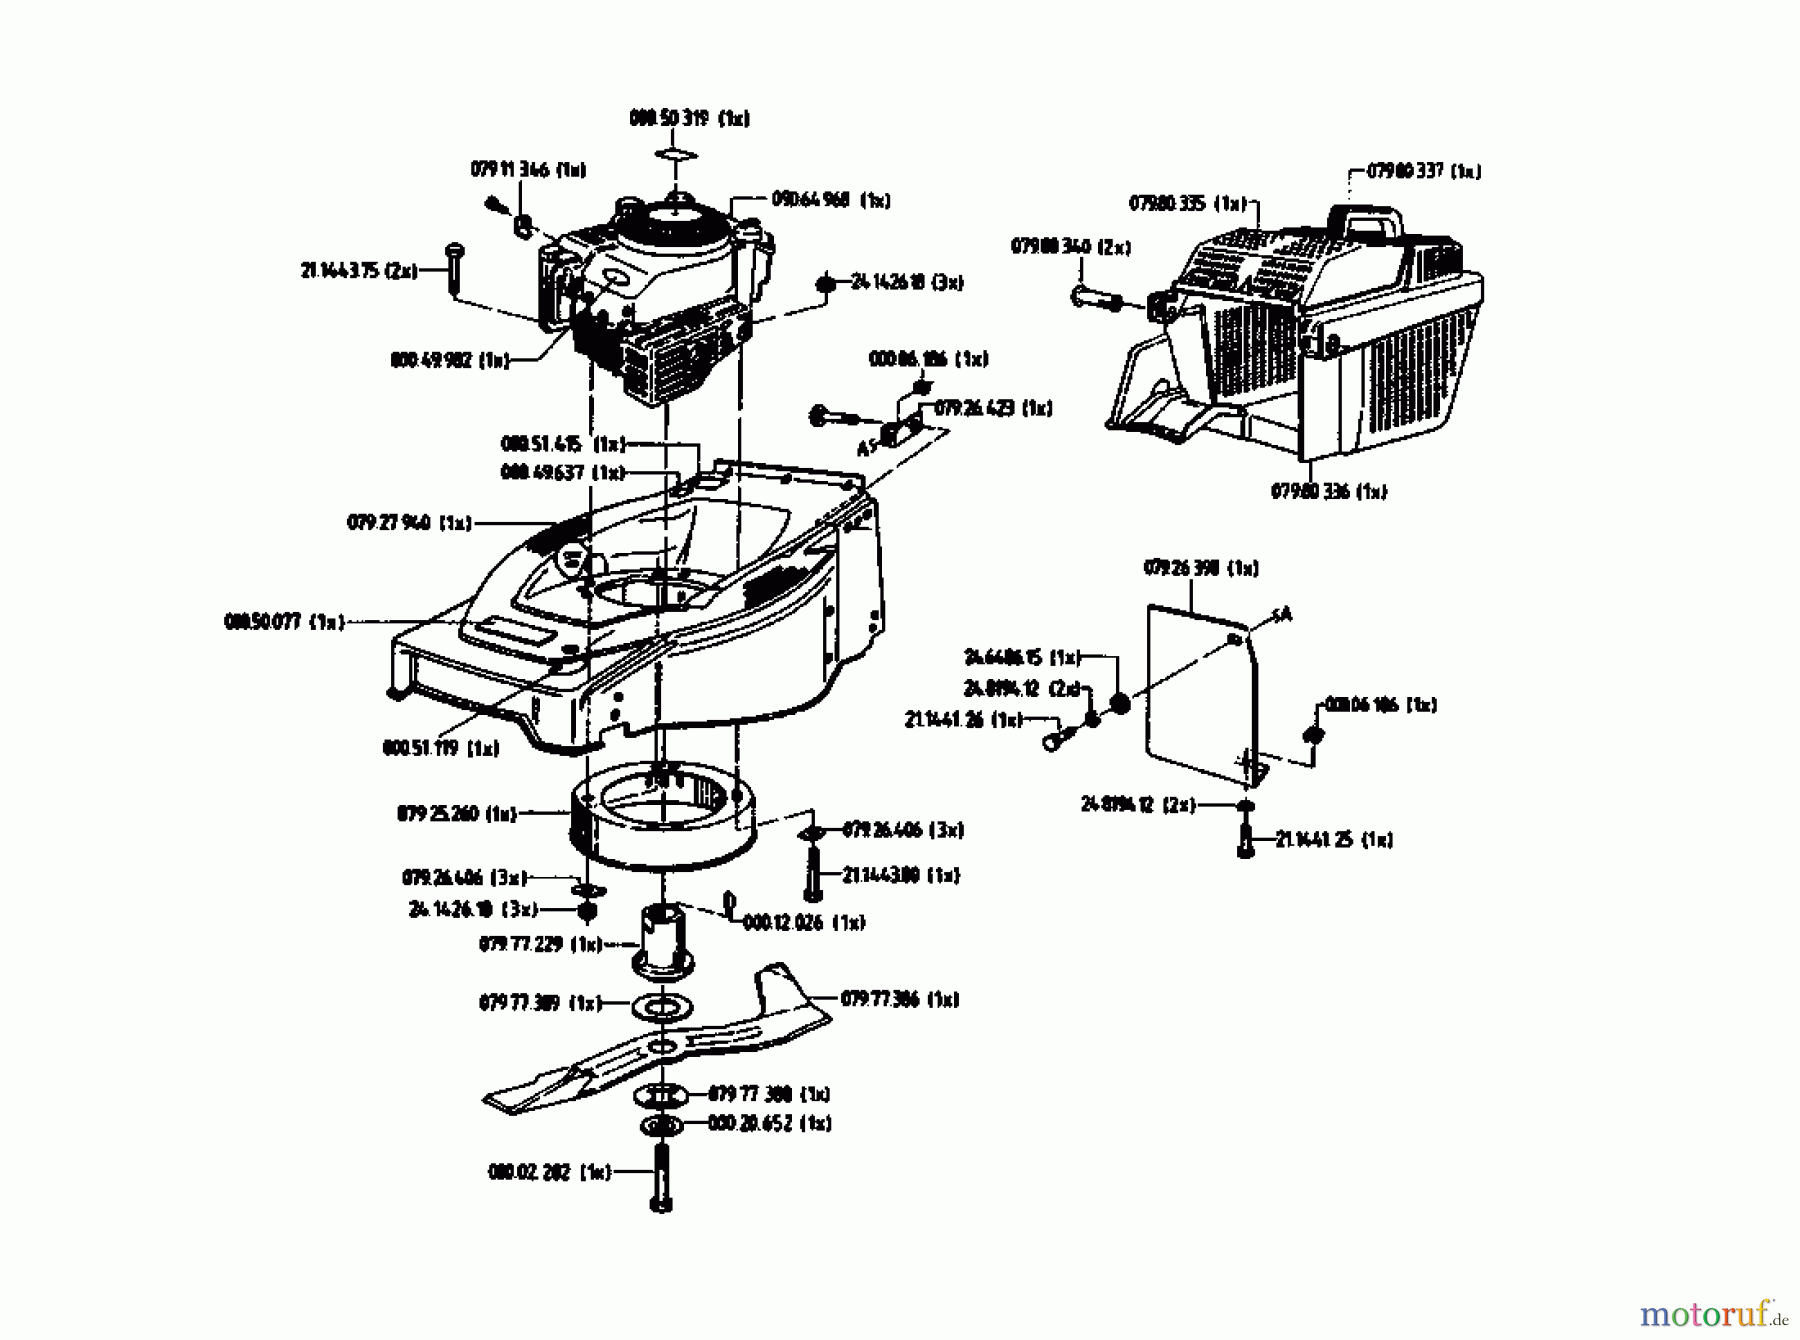  Gutbrod Tondeuse thermique HB 48 L 02814.01  (1993) Machine de base